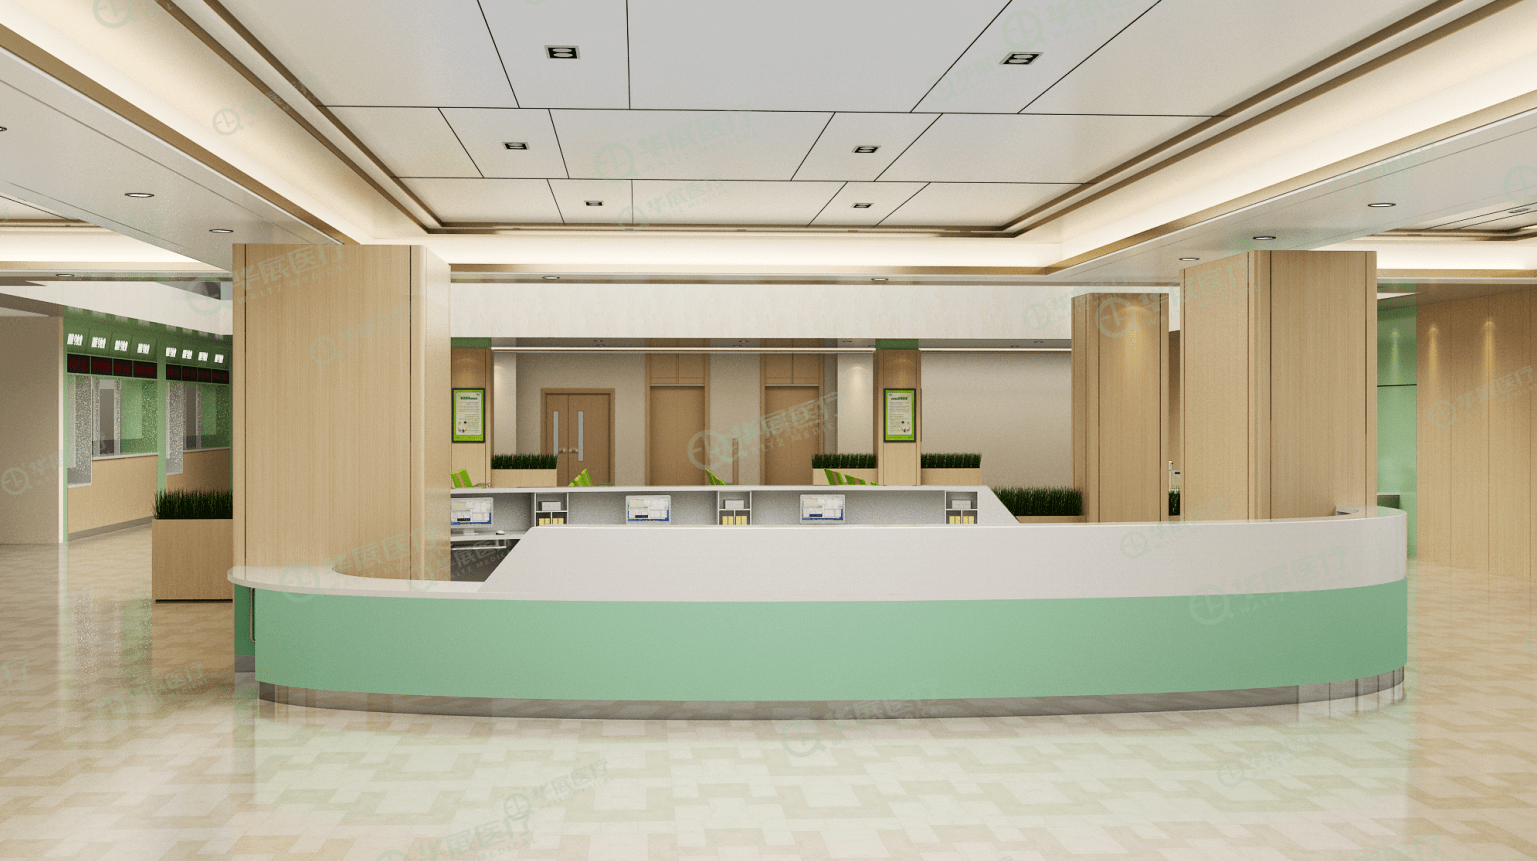 医院大厅导医台一般设置在门诊入口处的醒目位置,导医台可为患者就诊